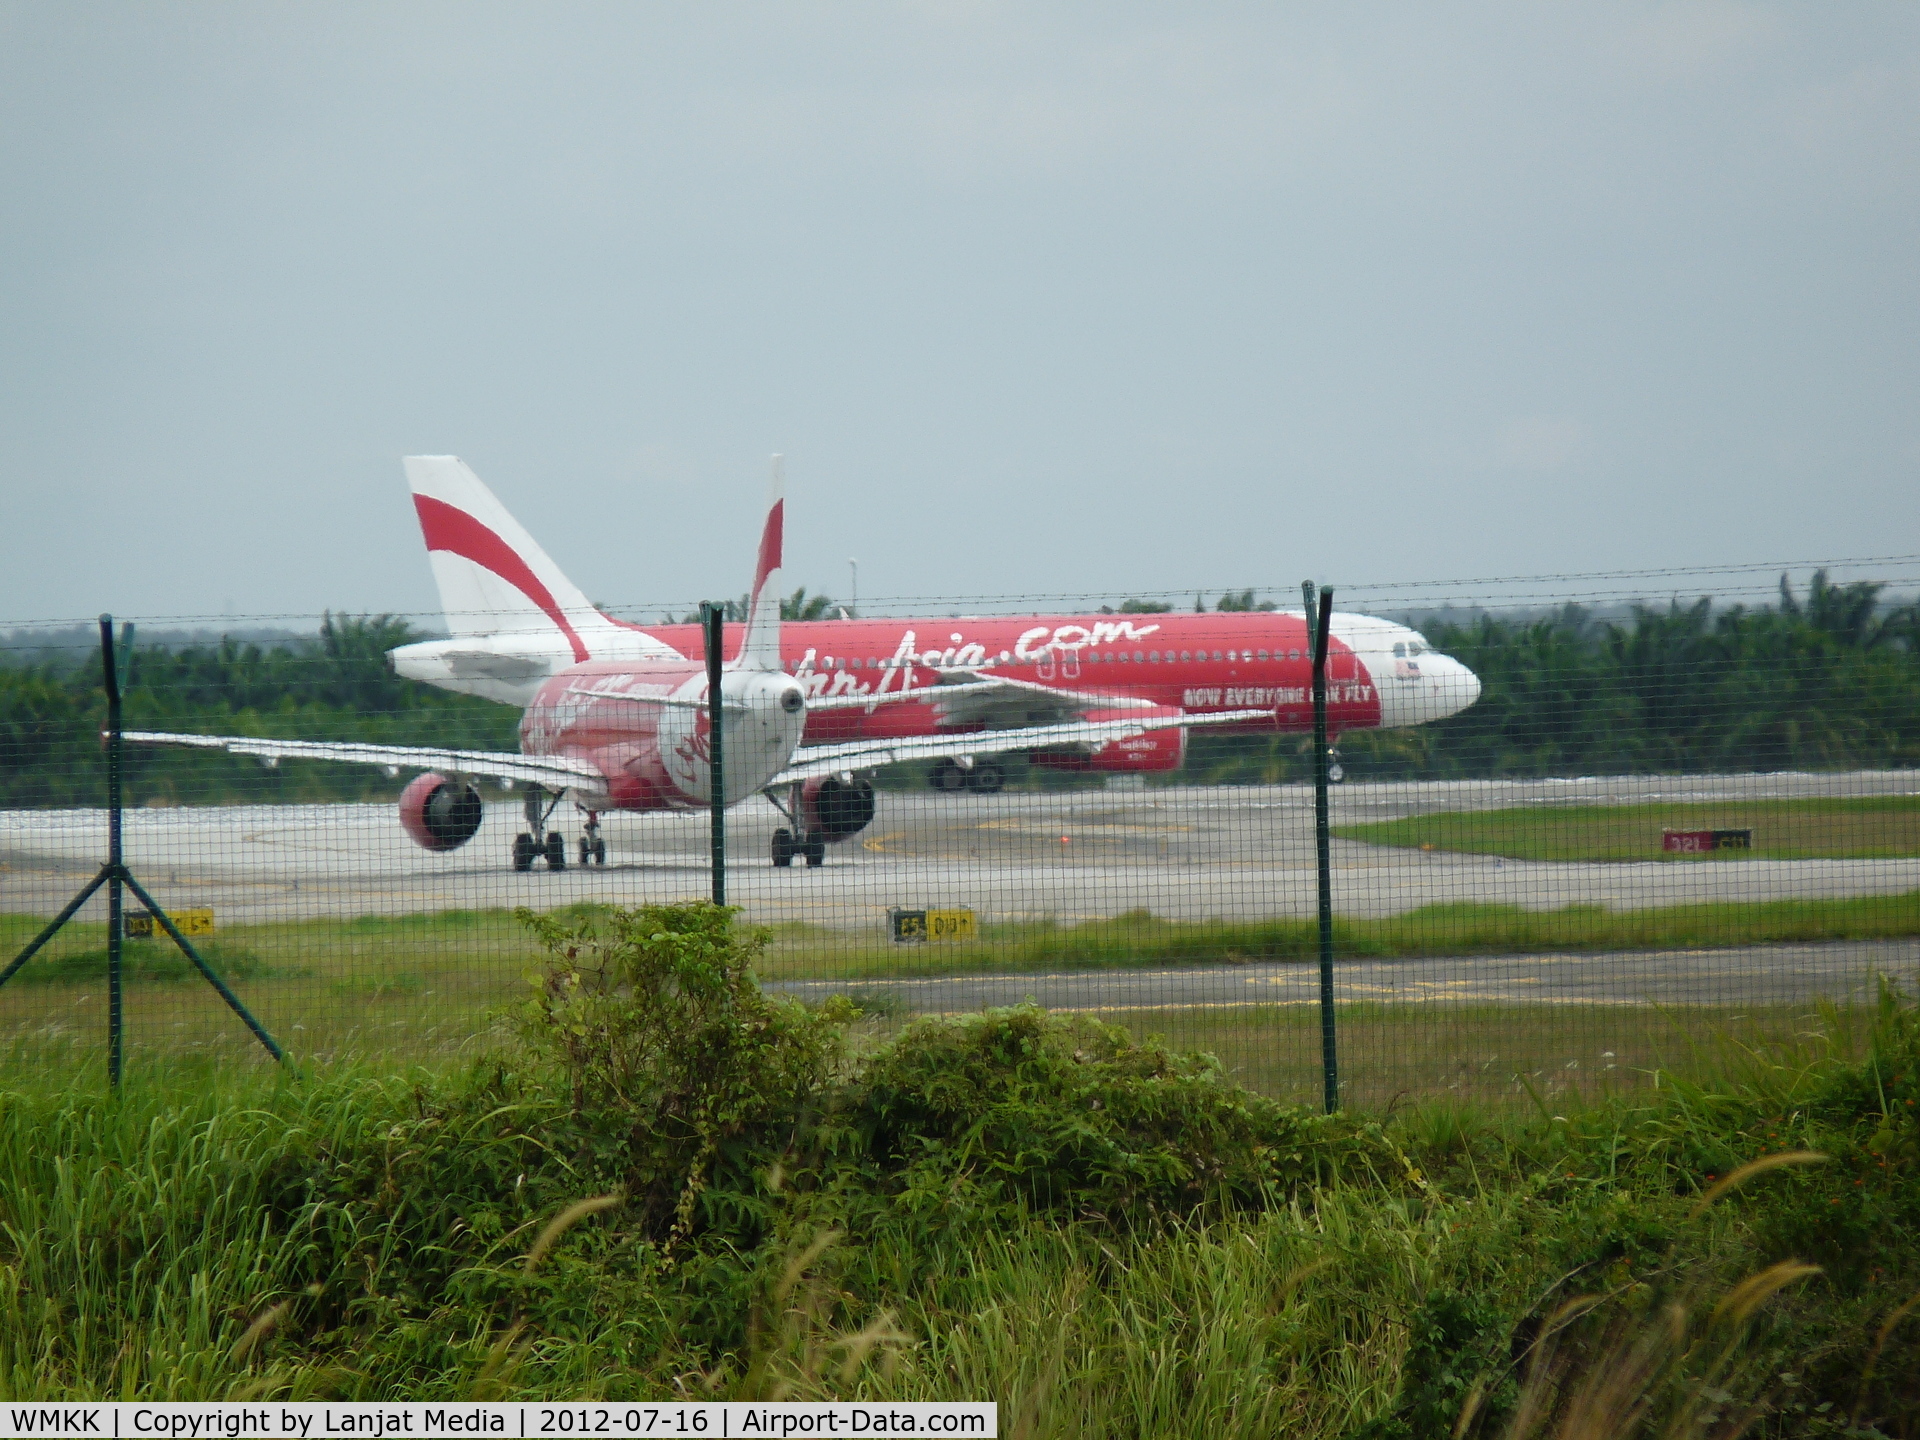 Kuala Lumpur International Airport, Sepang, Selangor Malaysia (WMKK) - 32L C11